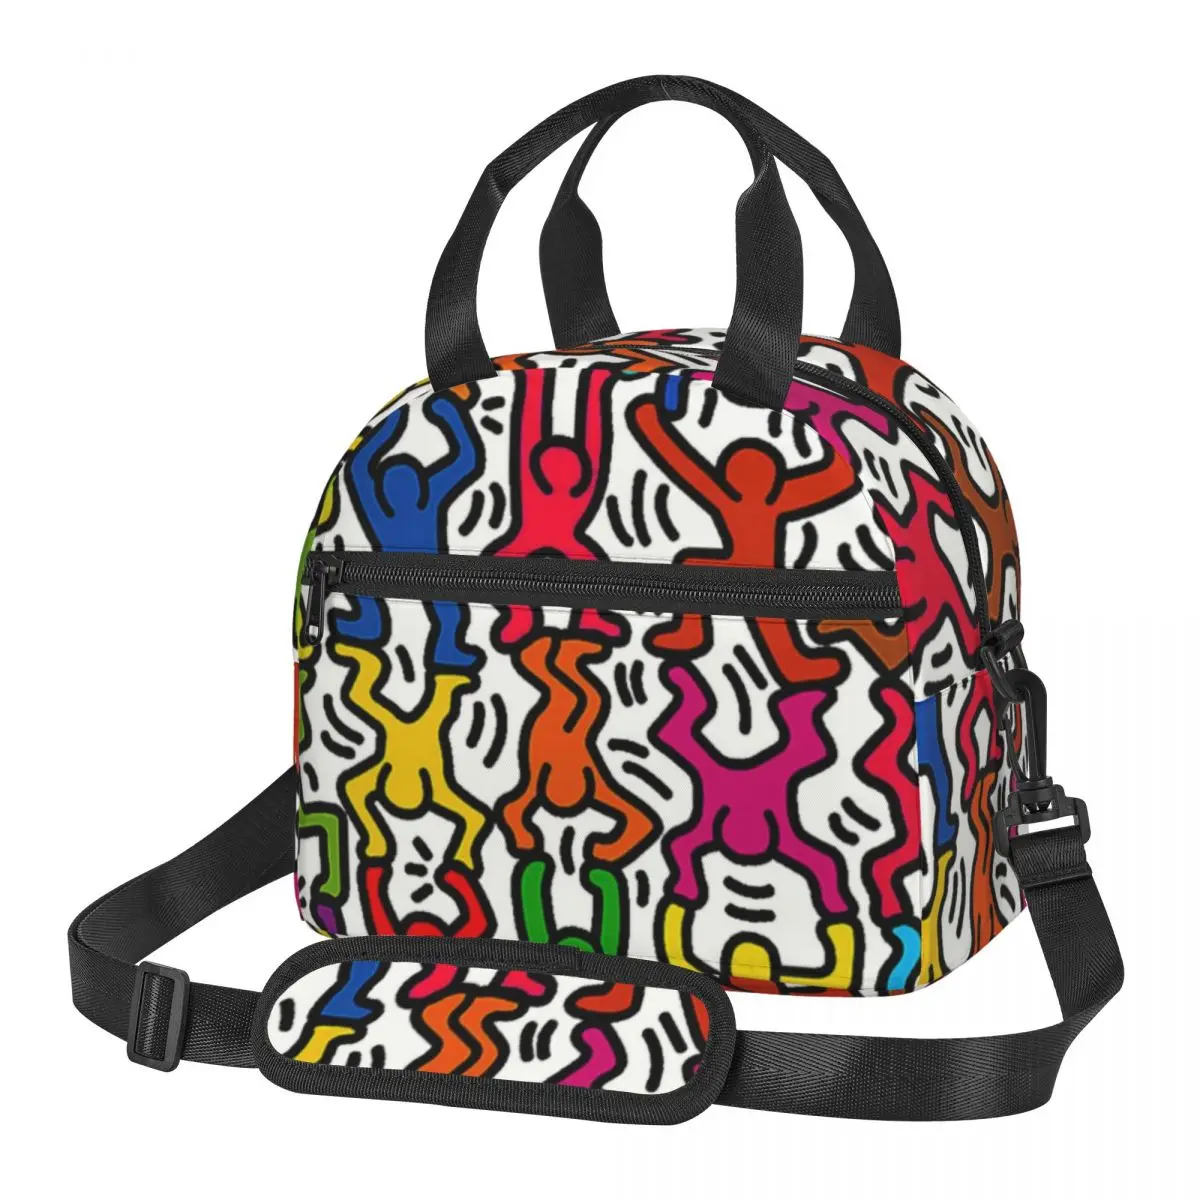 Keiths Haring Ланч-бокс Для Женщин, Многофункциональный кулер с граффити, Термосумка для ланча с пищевой изоляцией, сумка для ланча Для школьников